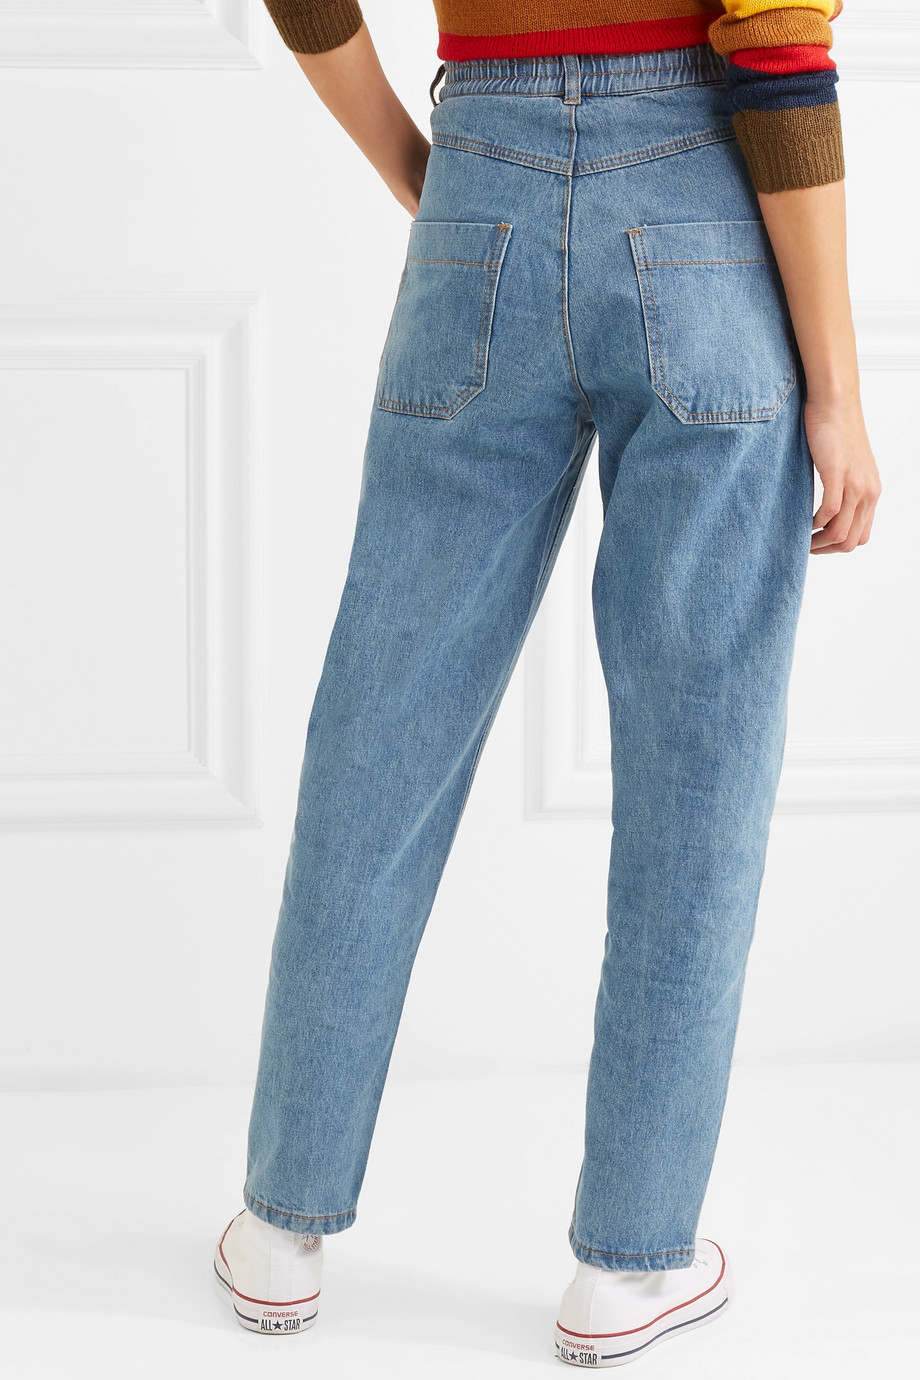 calças jeans da moda 2019